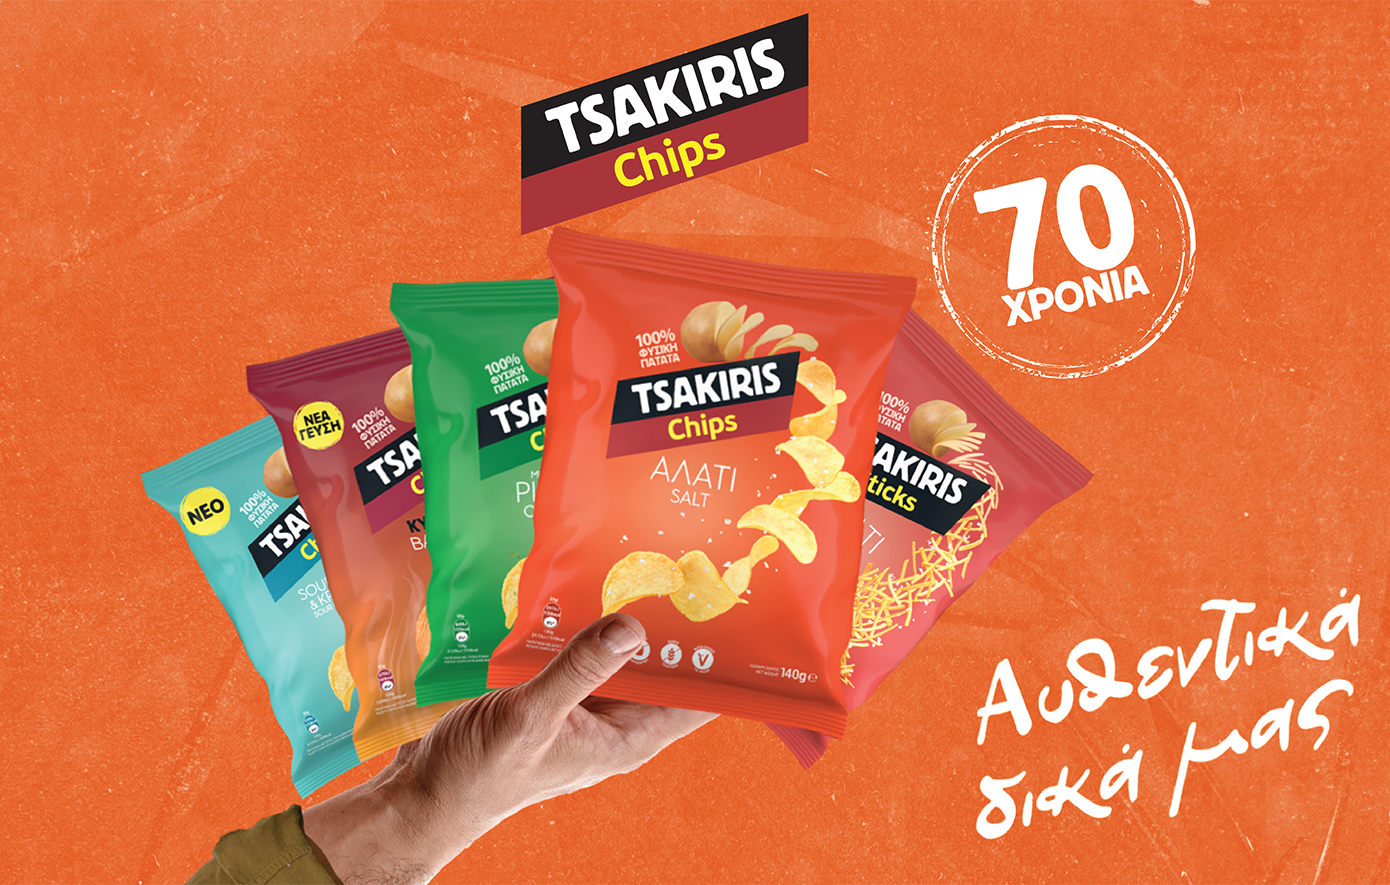 Τα Tsakiris Chips γιορτάζουν 70 χρόνια